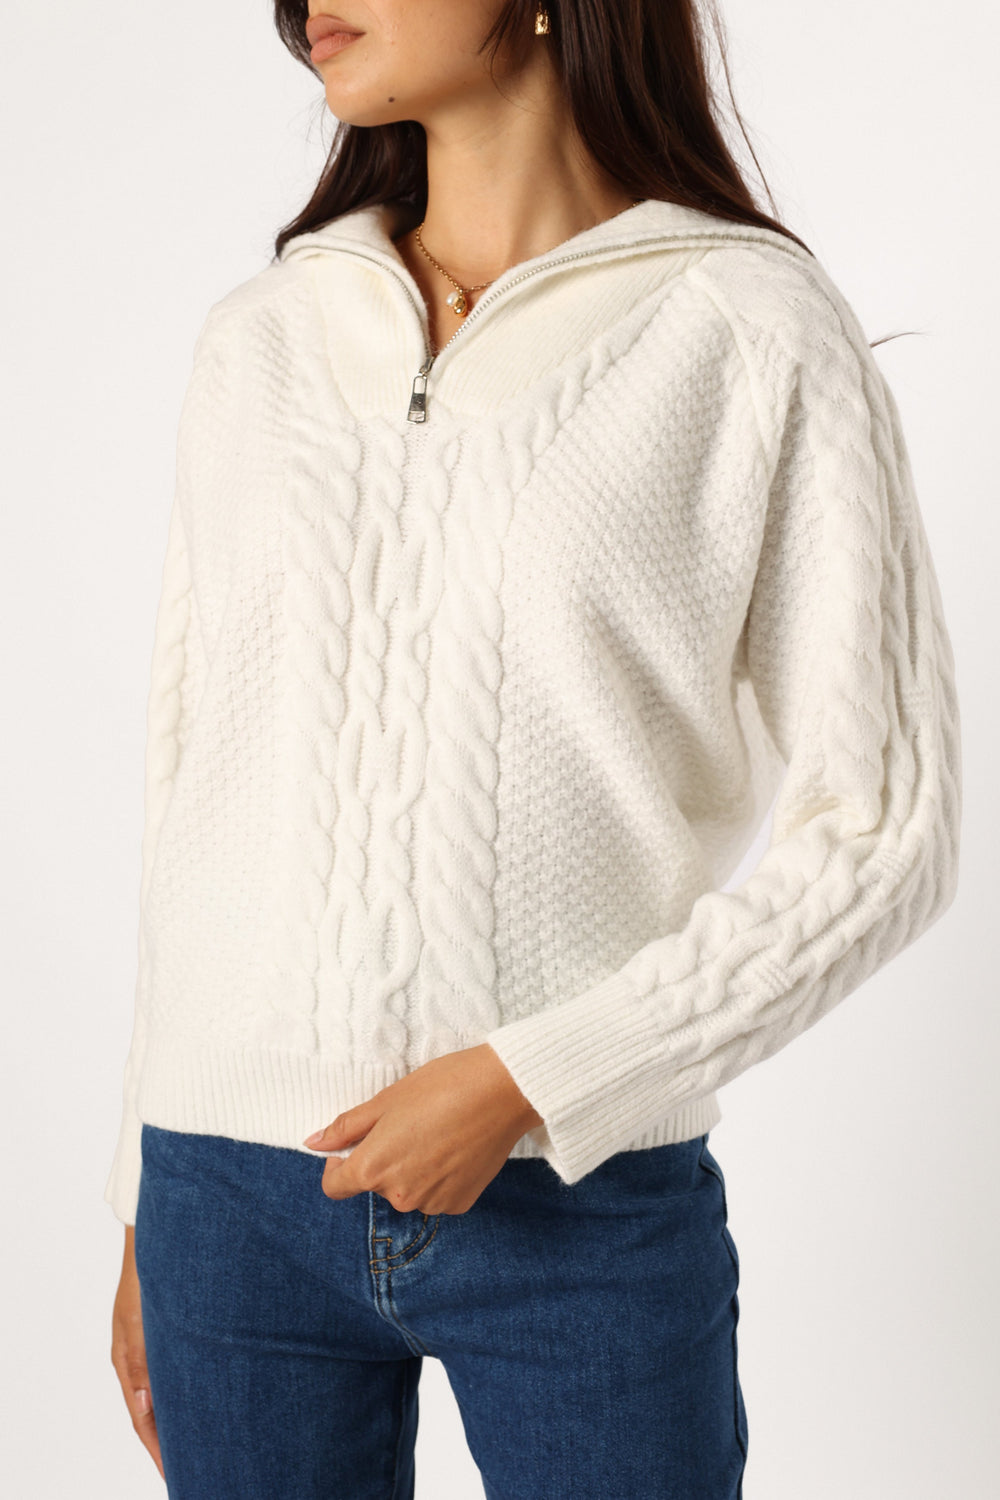 Petal and Pup USA KNITWEAR Ebony Knit Sweater - White